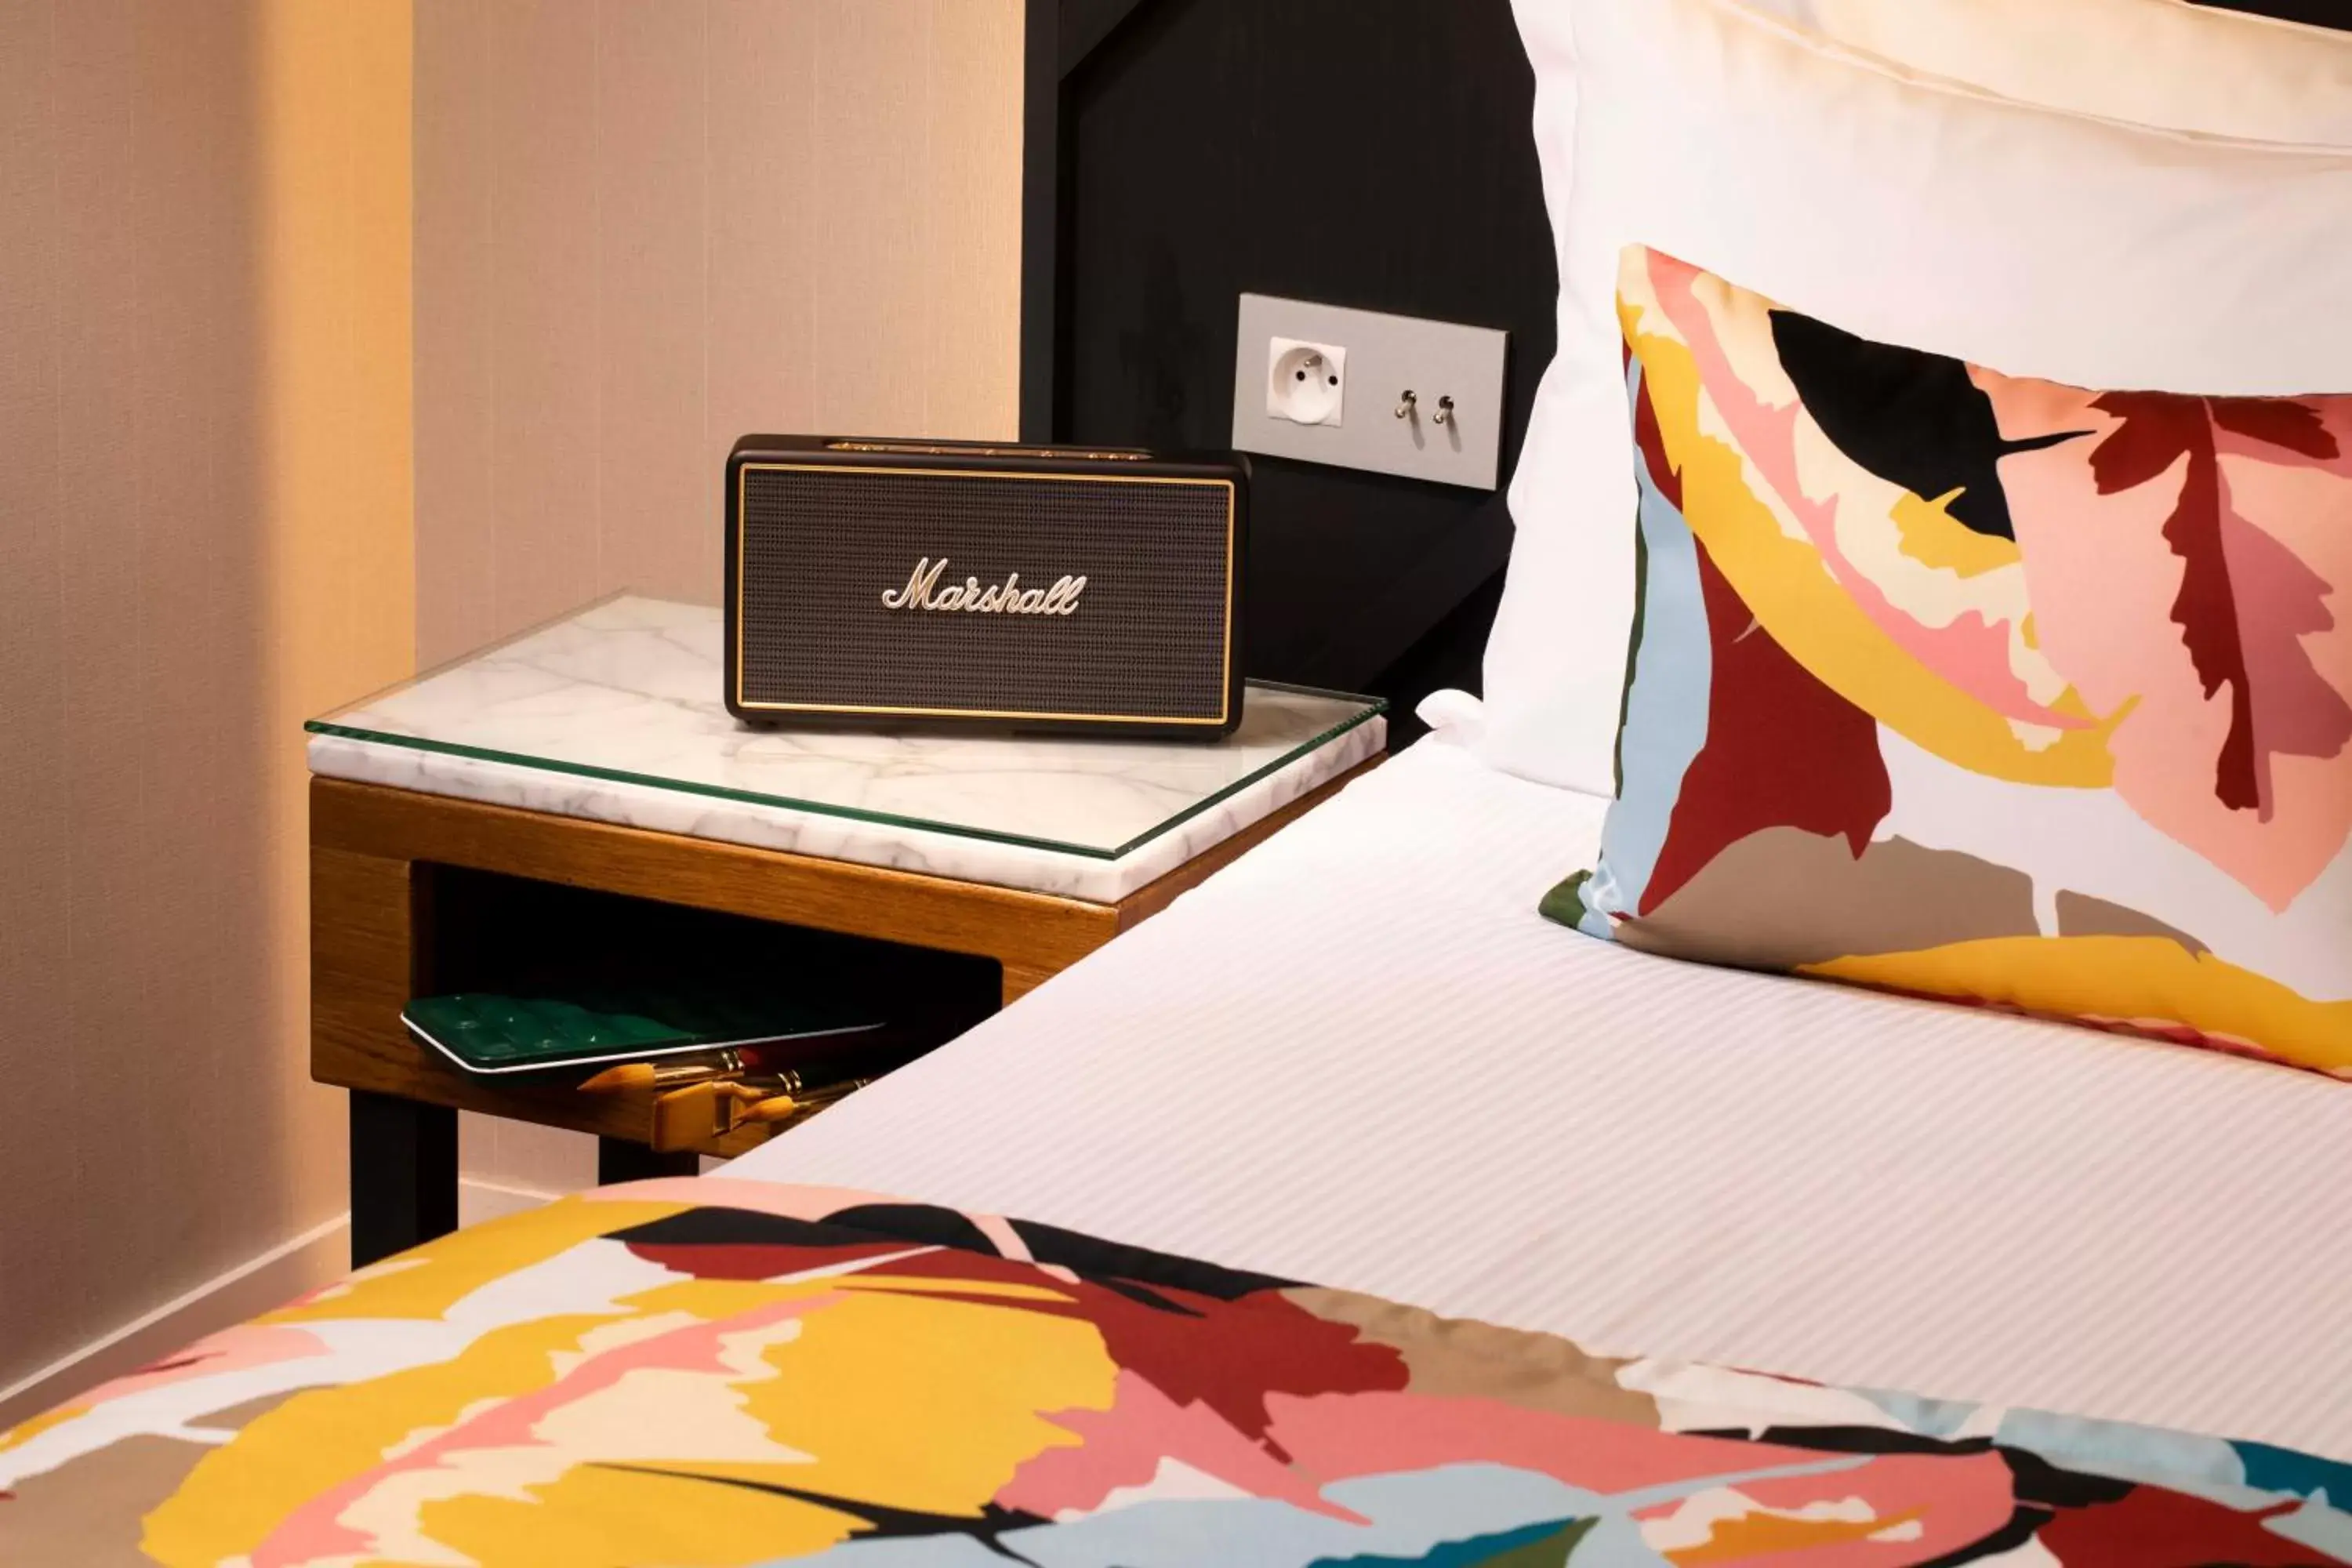 Bedroom, Bed in Hôtel des Arts Montmartre